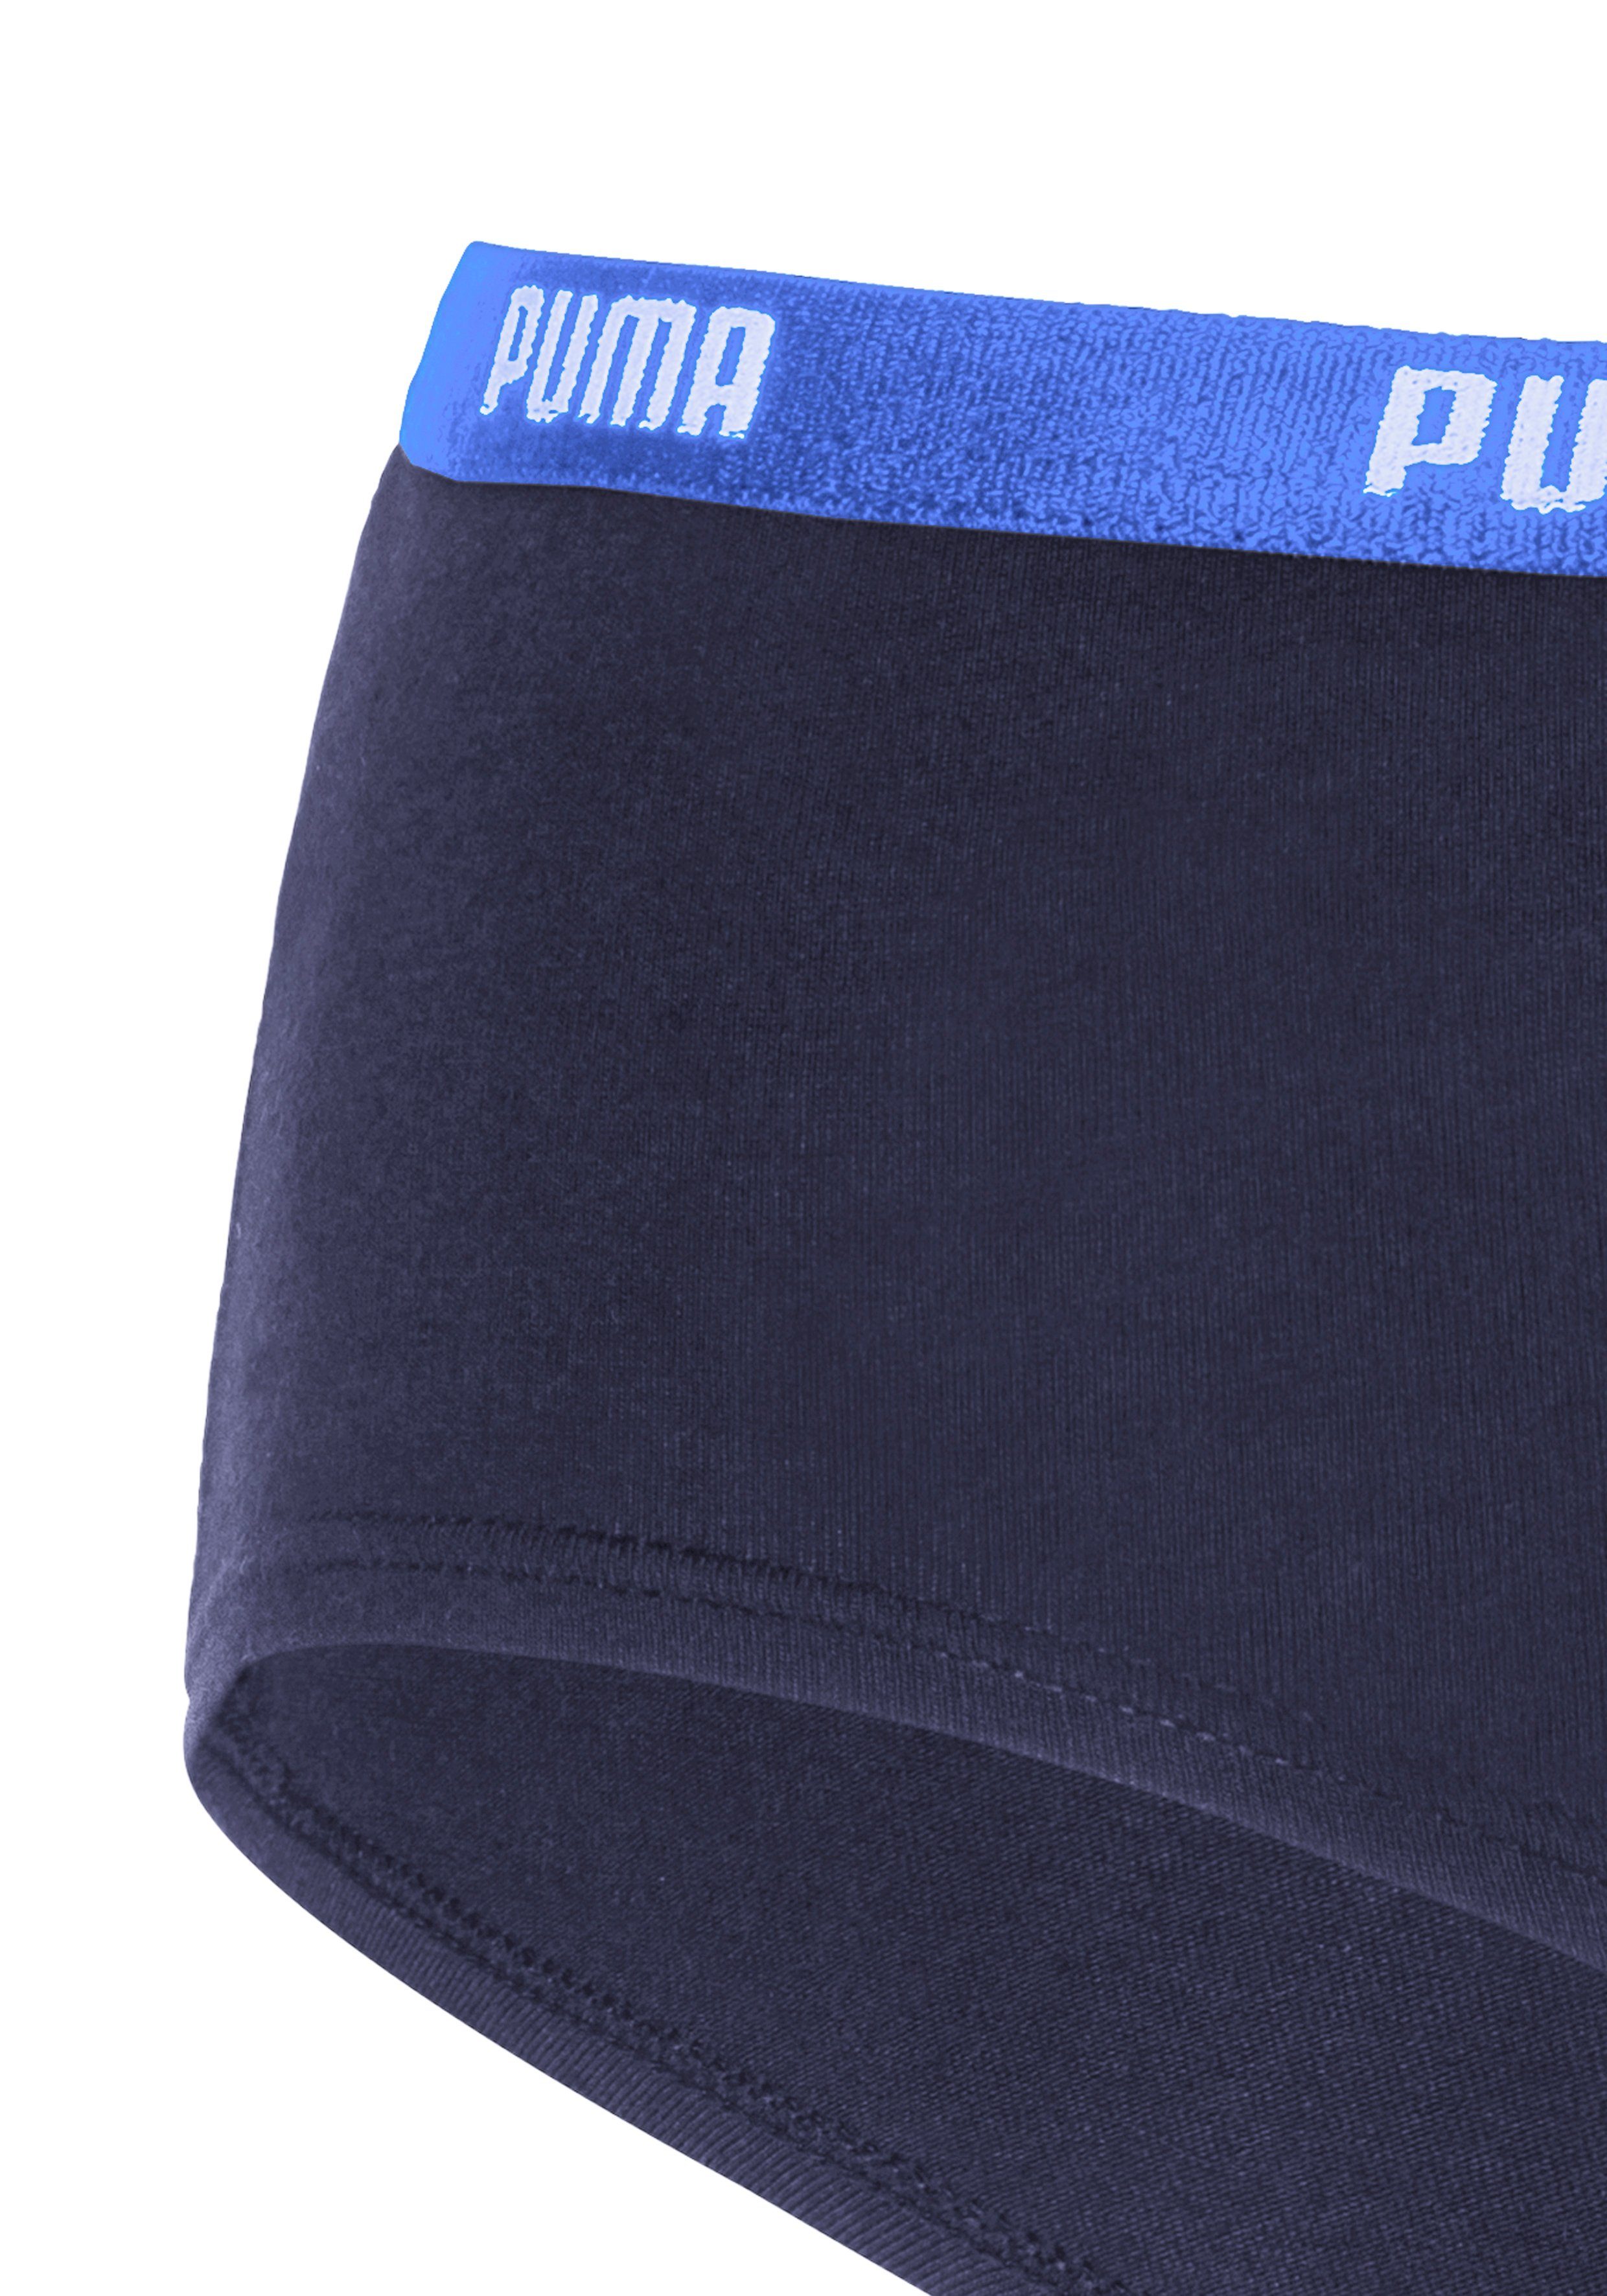 Wäsche/Bademode Unterhosen PUMA Panty EVERYDAY (2 Stück) mit schmalem Logobündchen